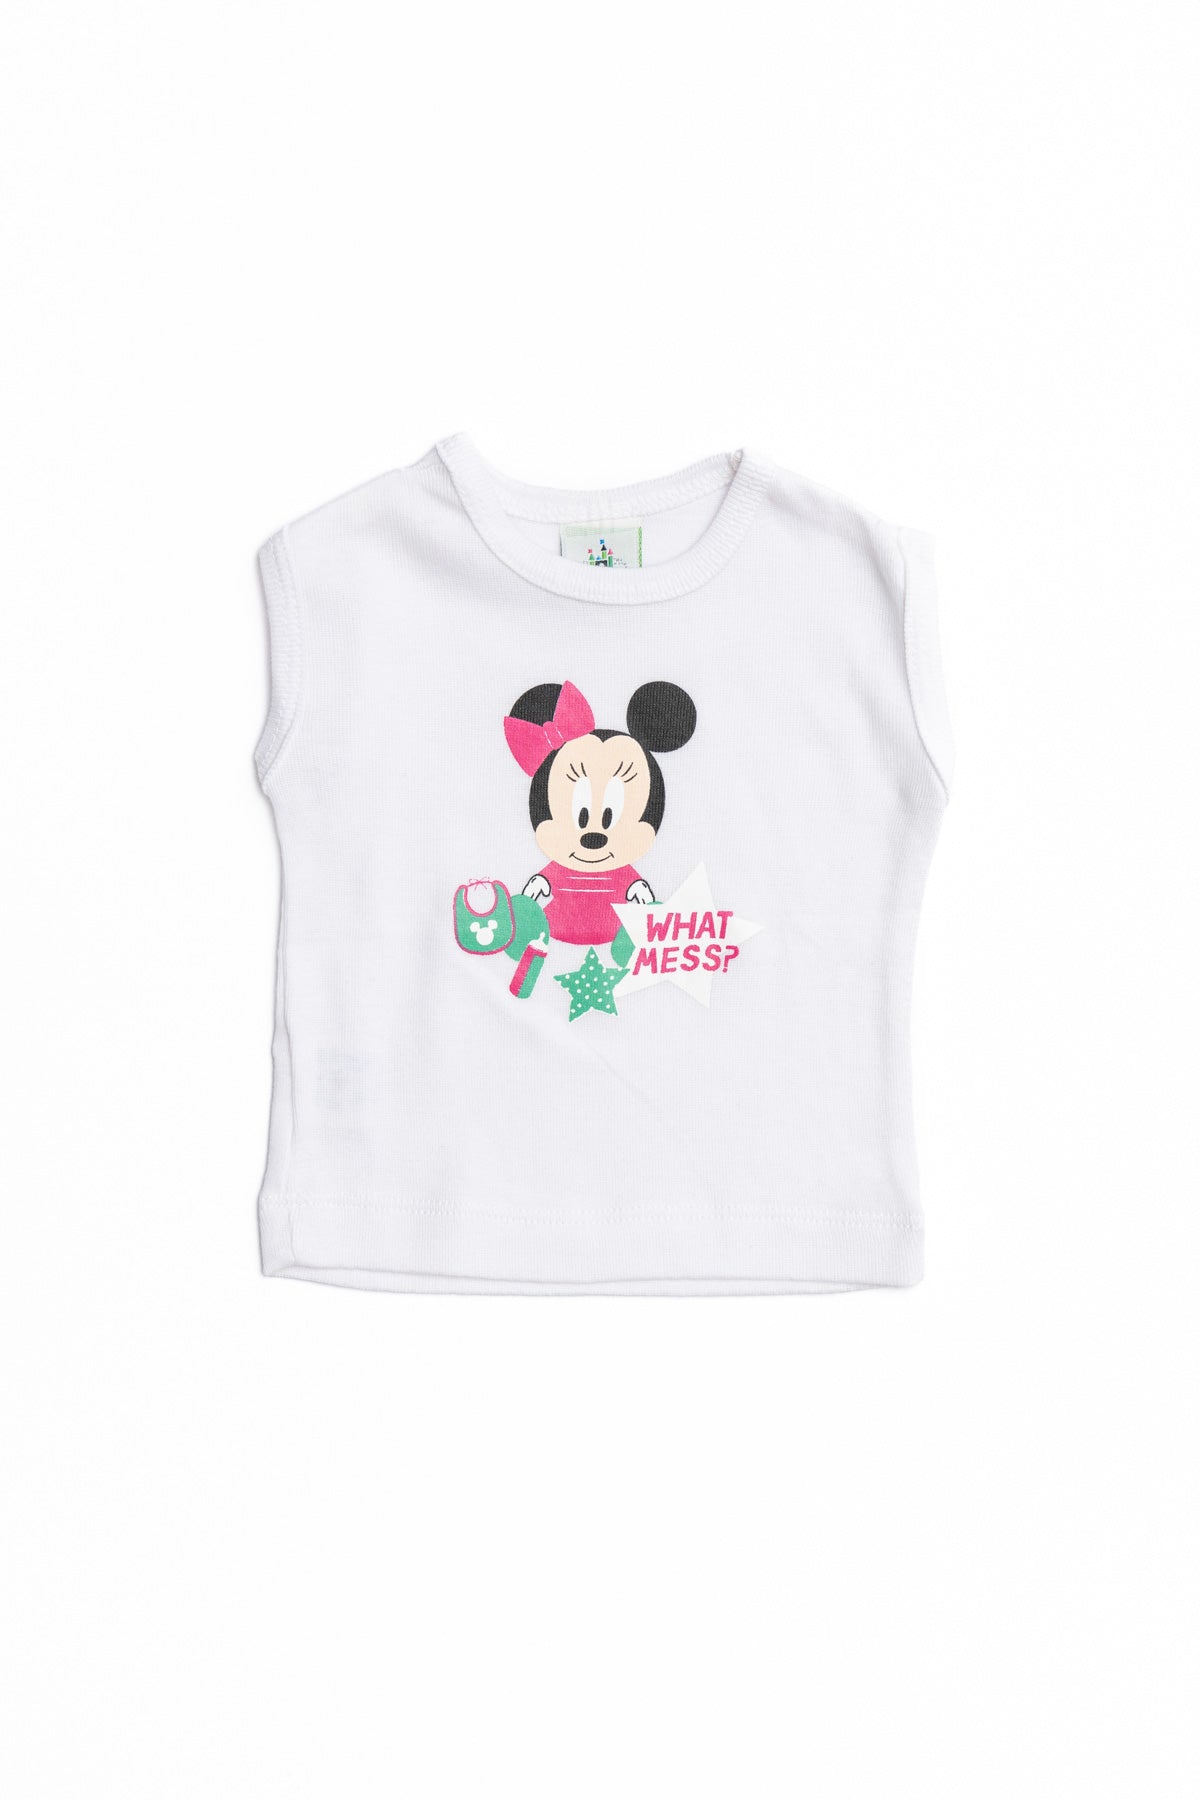 T-Shirt Baby  Minnie " What Mess "  sleeveless 4115